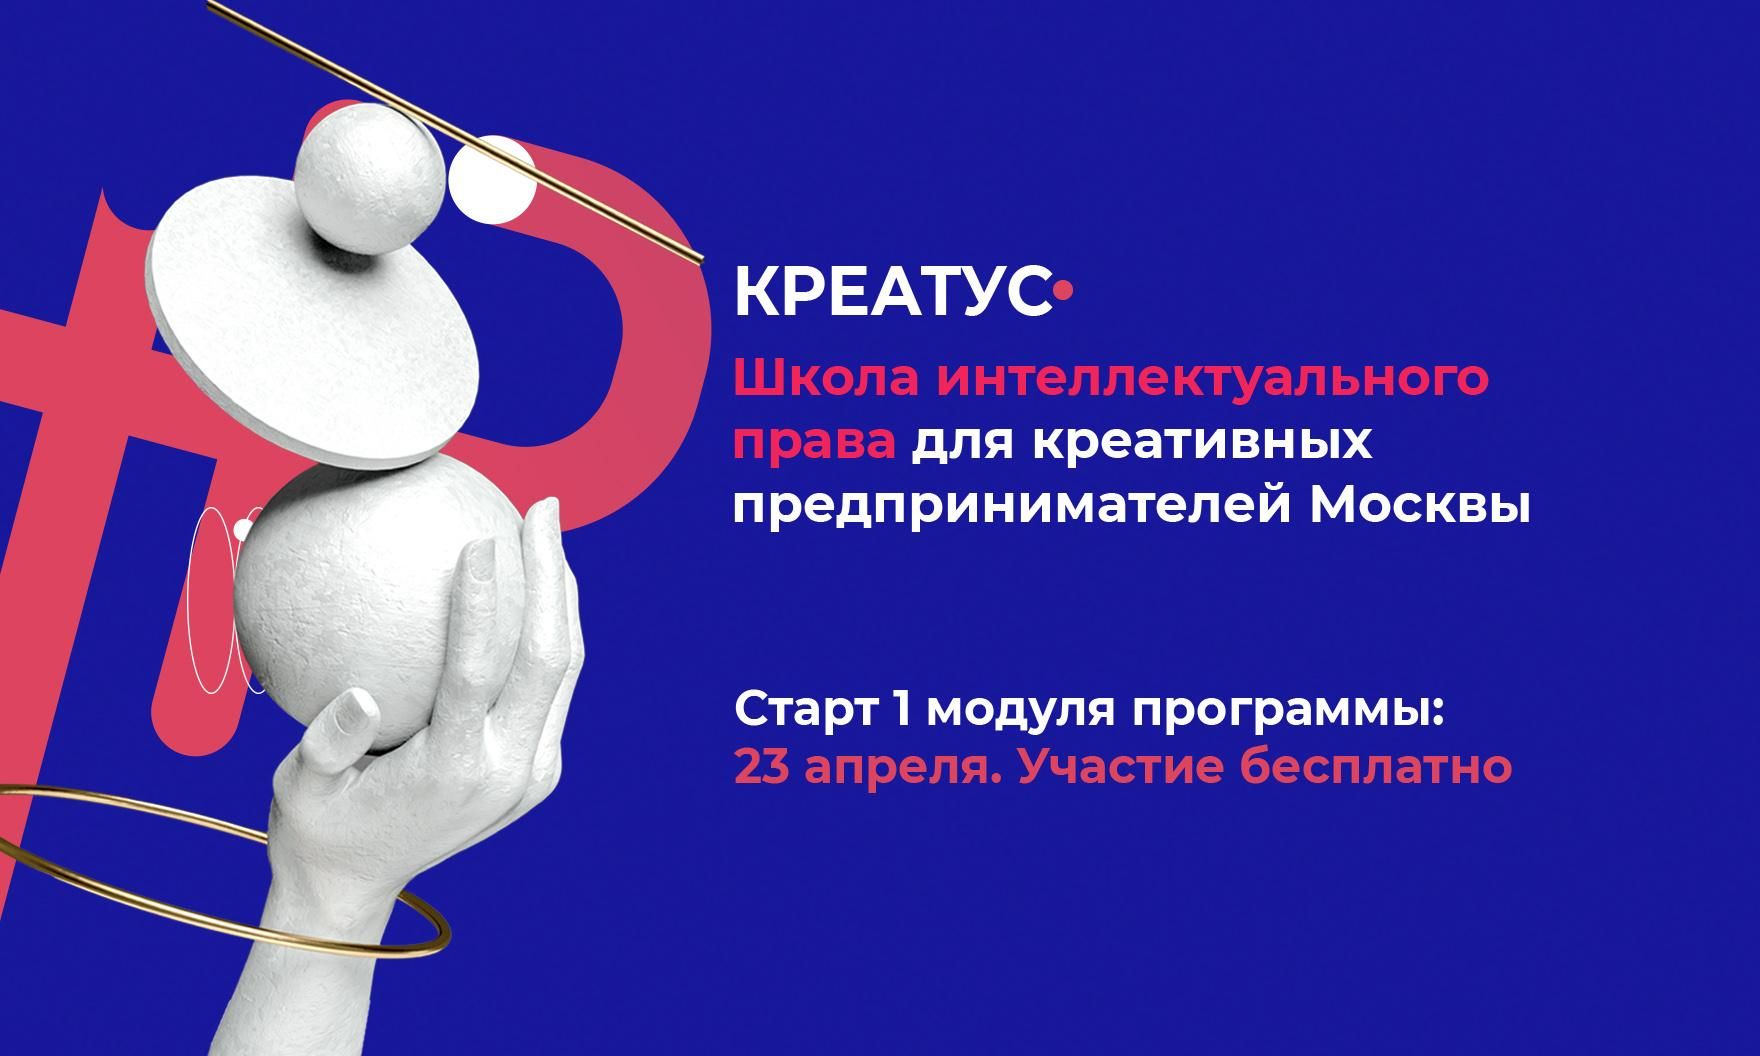 Первая в России школа интеллектуального права для креативных предпринимателей «Креатус» откроется в Москве